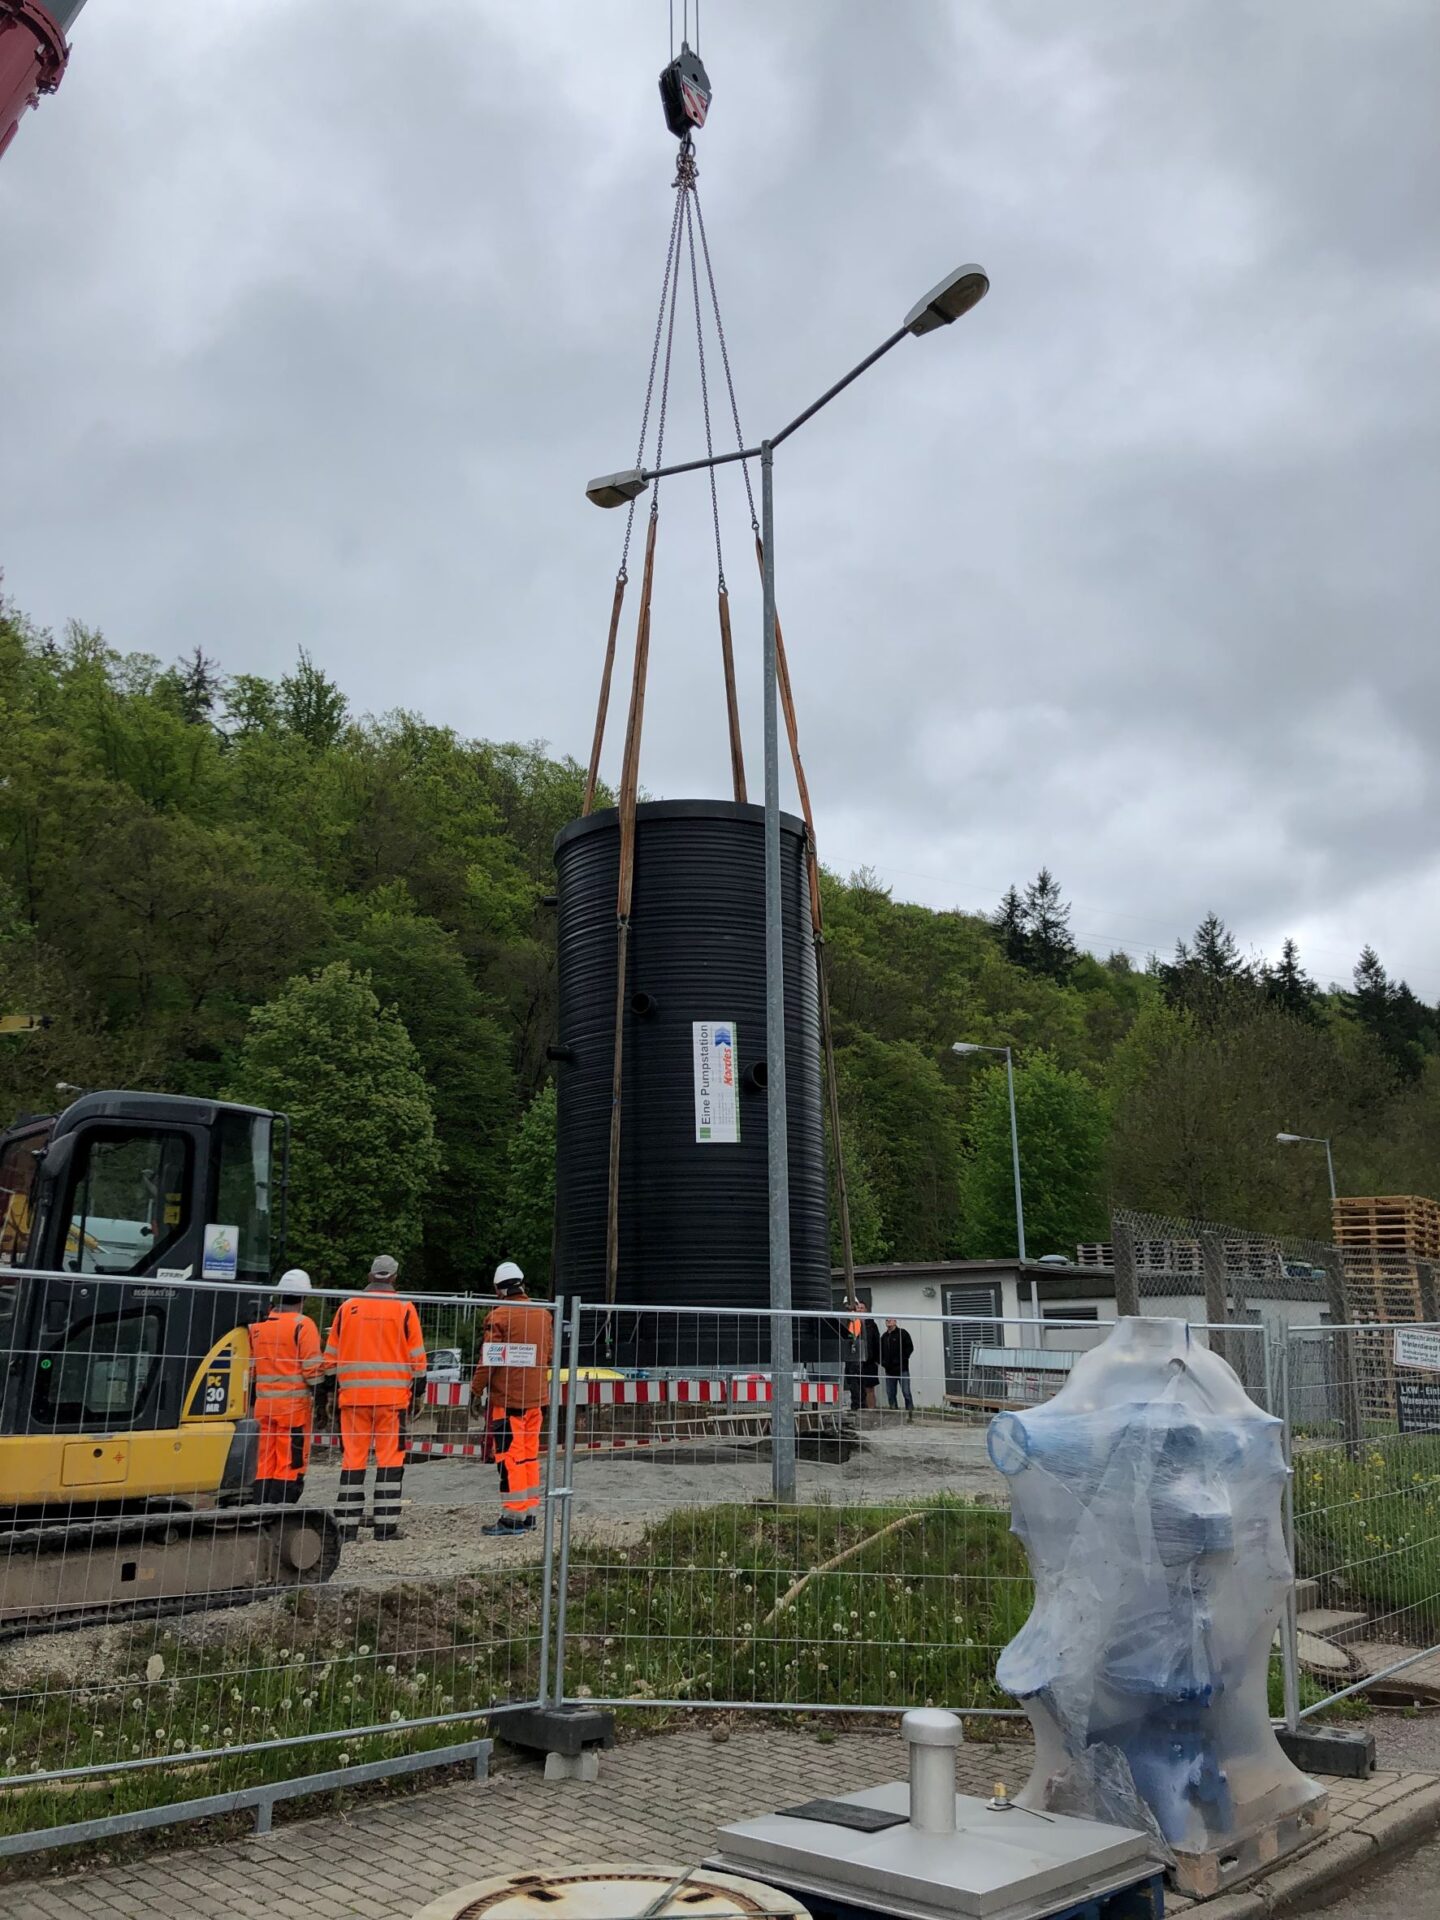 Kordes Referenz Pumpstation 2019 Benshausen 40 - Automobilzulieferer in Benshausen